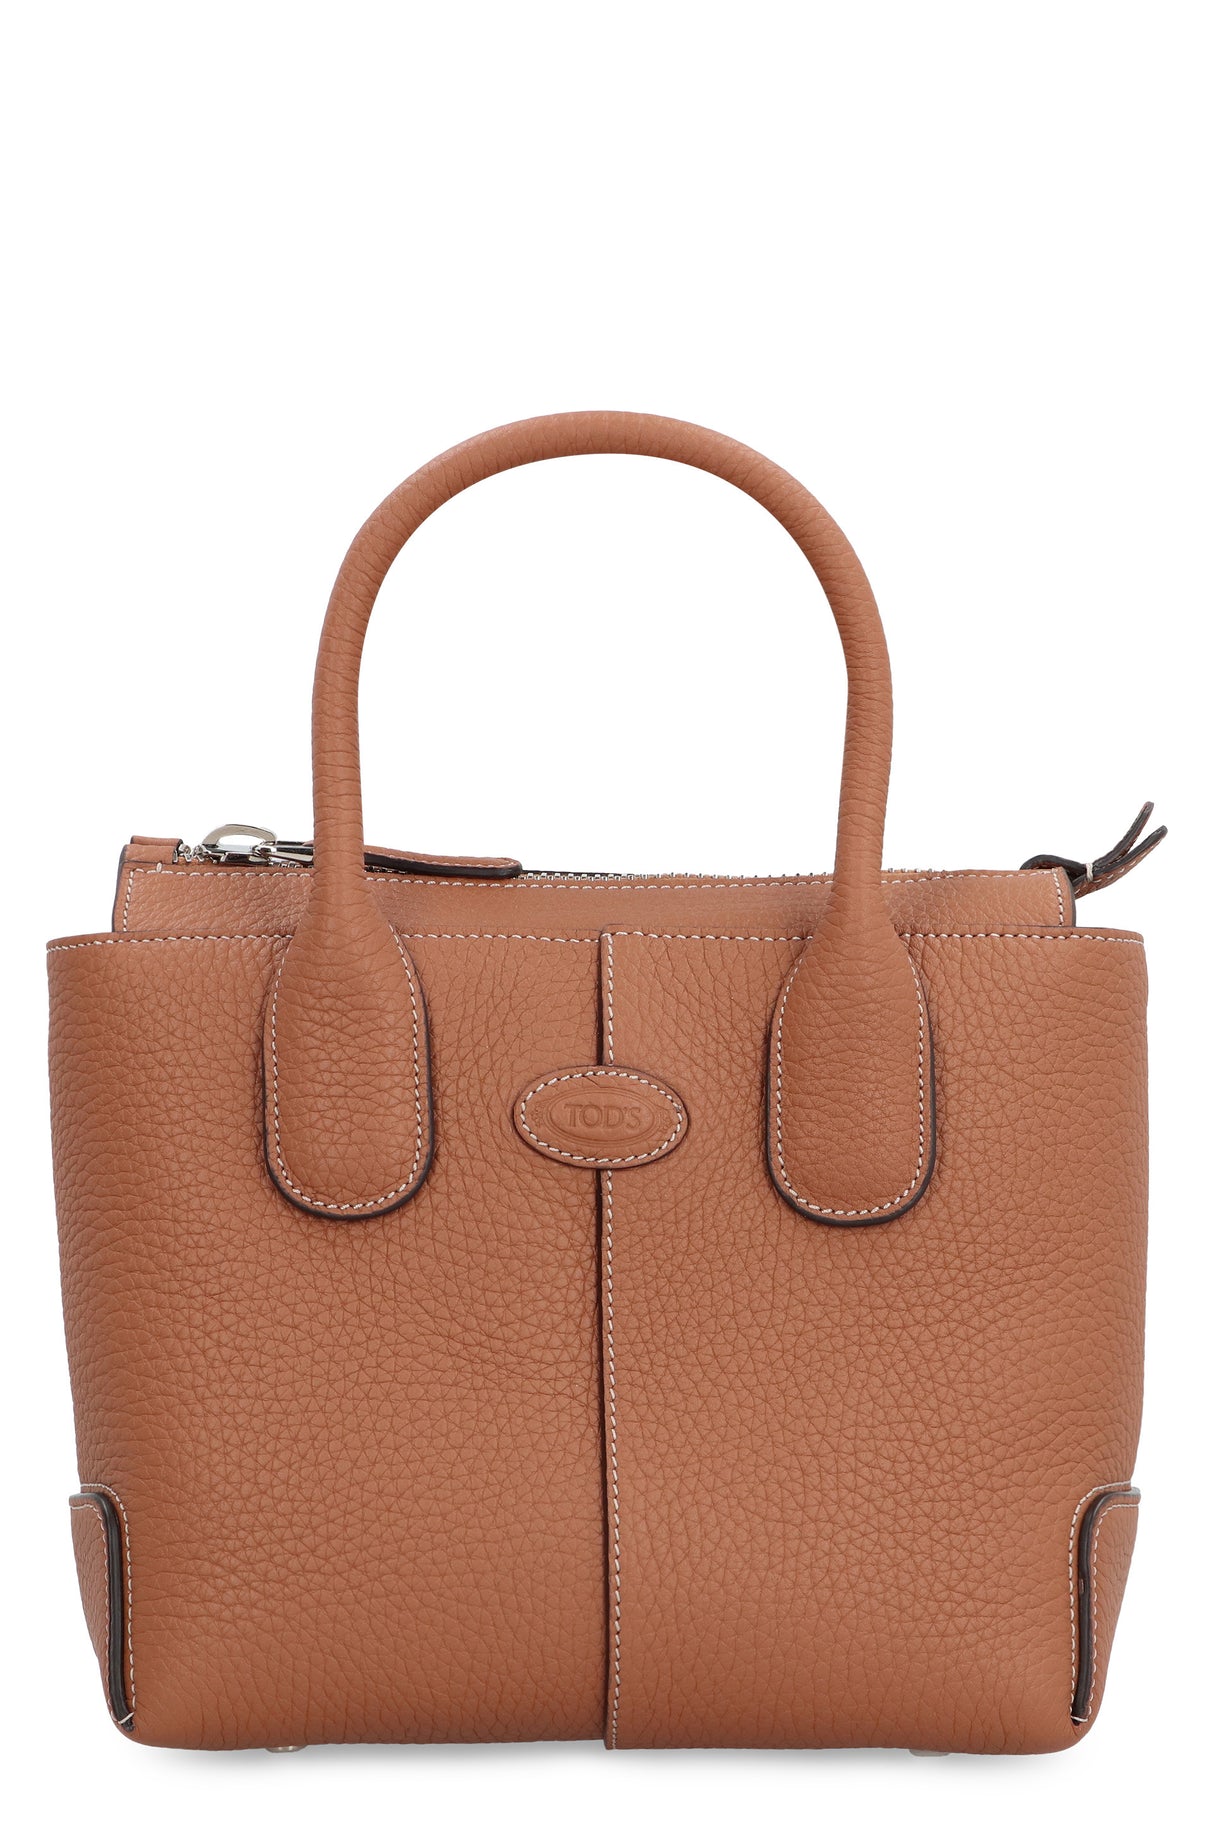 Saddle Brown Peppled Calfskin Tote Handbag with Adjustable Shoulder Strap